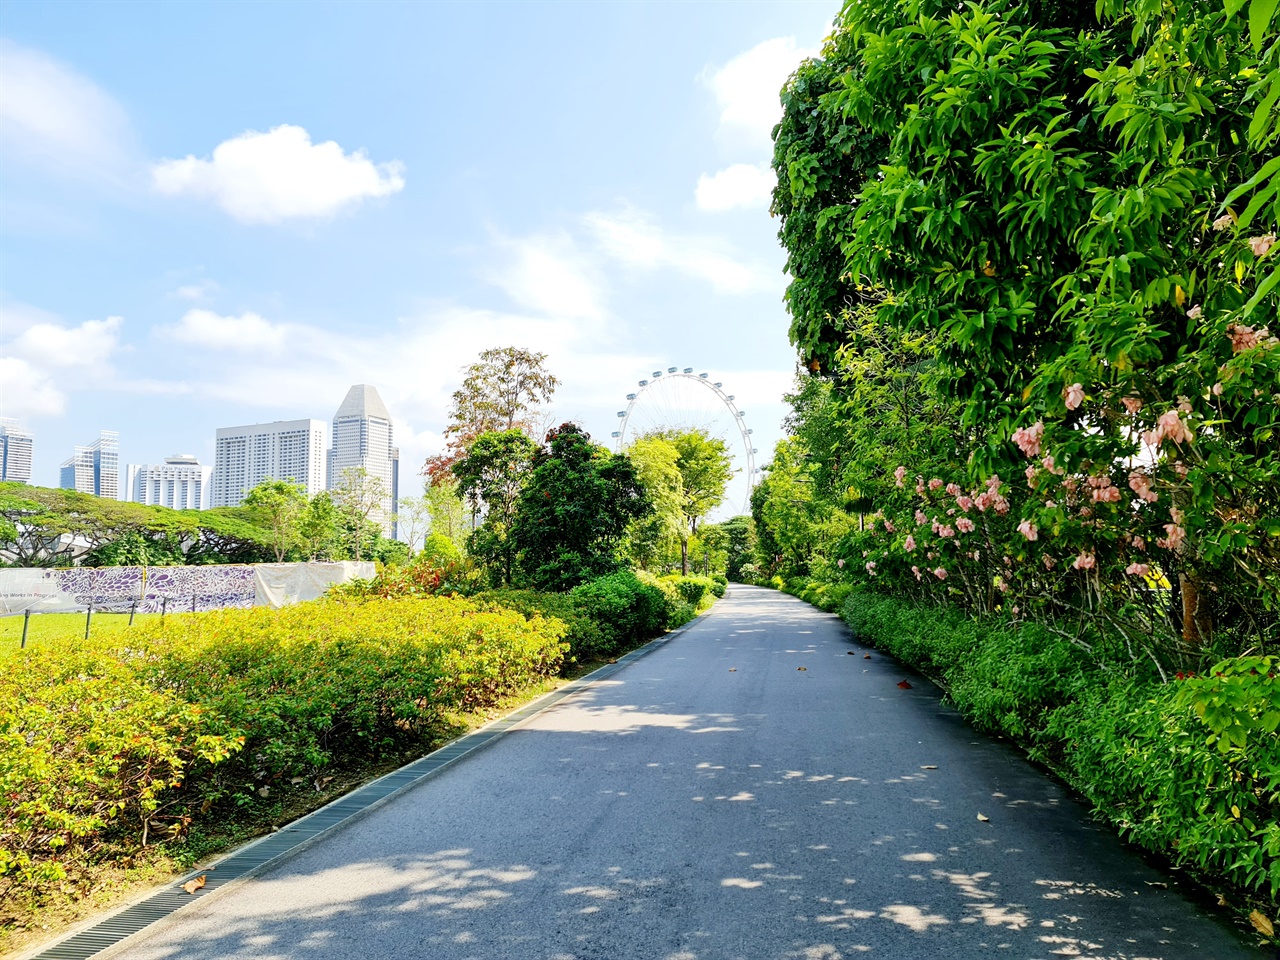 햇볕이 쨍쨍 내리쬐는 날 싱가포르 가든스 바이 더 베이(Gardens by the Bay)에서 찍은 사진입니다.